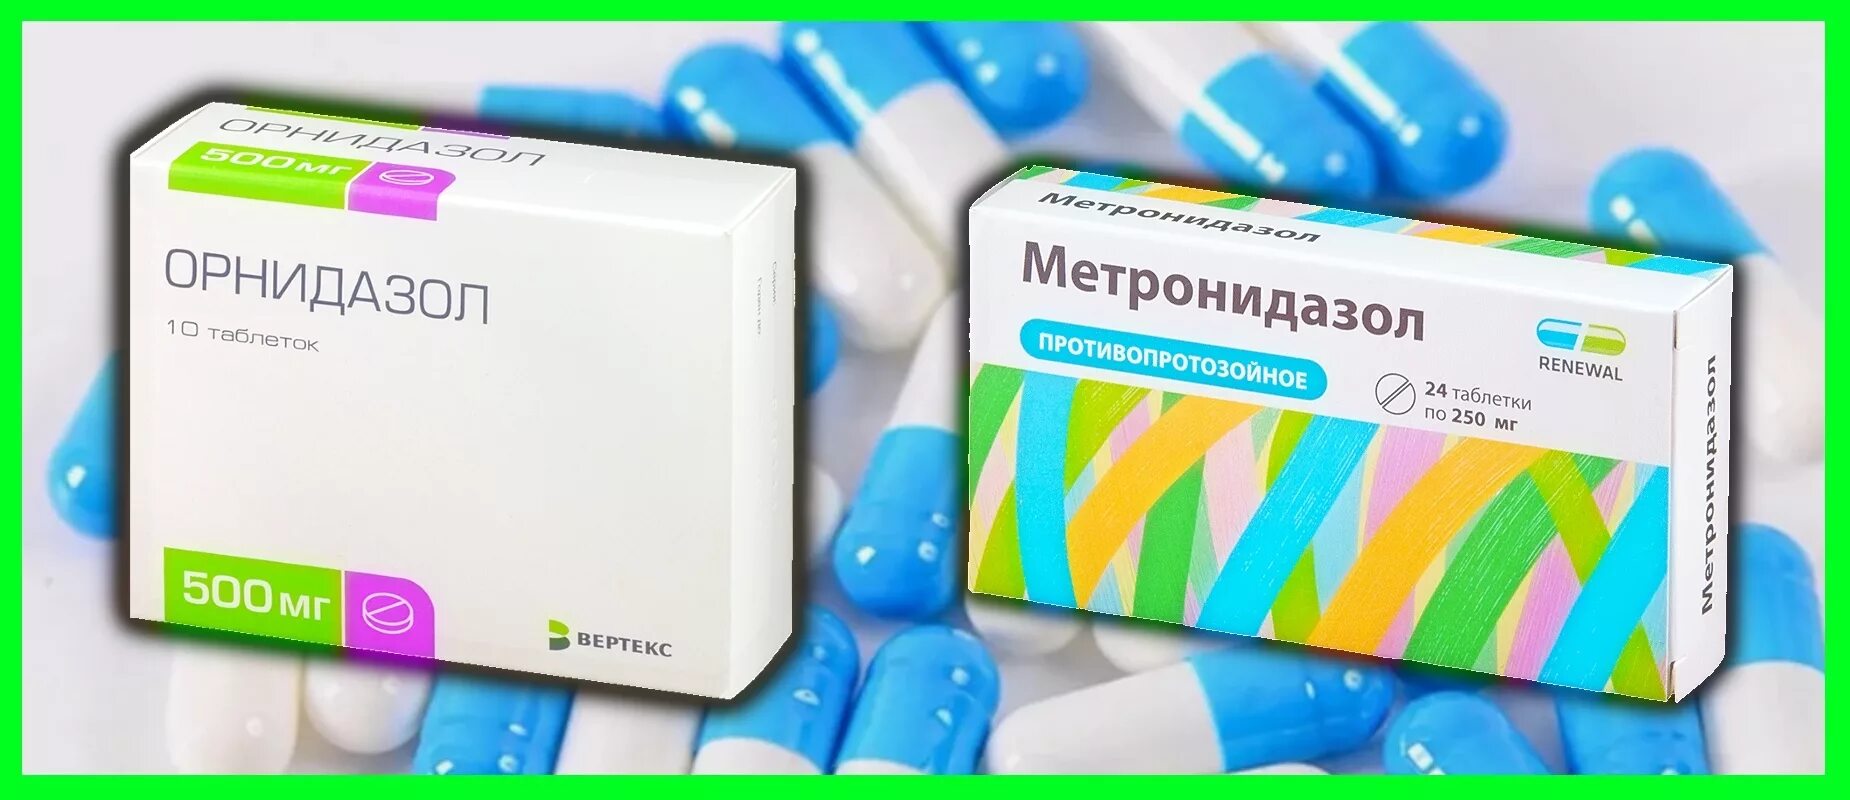 Метронидазол антибиотик ли. Свечи метронидазол+Орнидазол. Антибиотик таблетки Орнидазол. Метронидазол или Орнидазол таблетки. Антибиотик метронидазол.